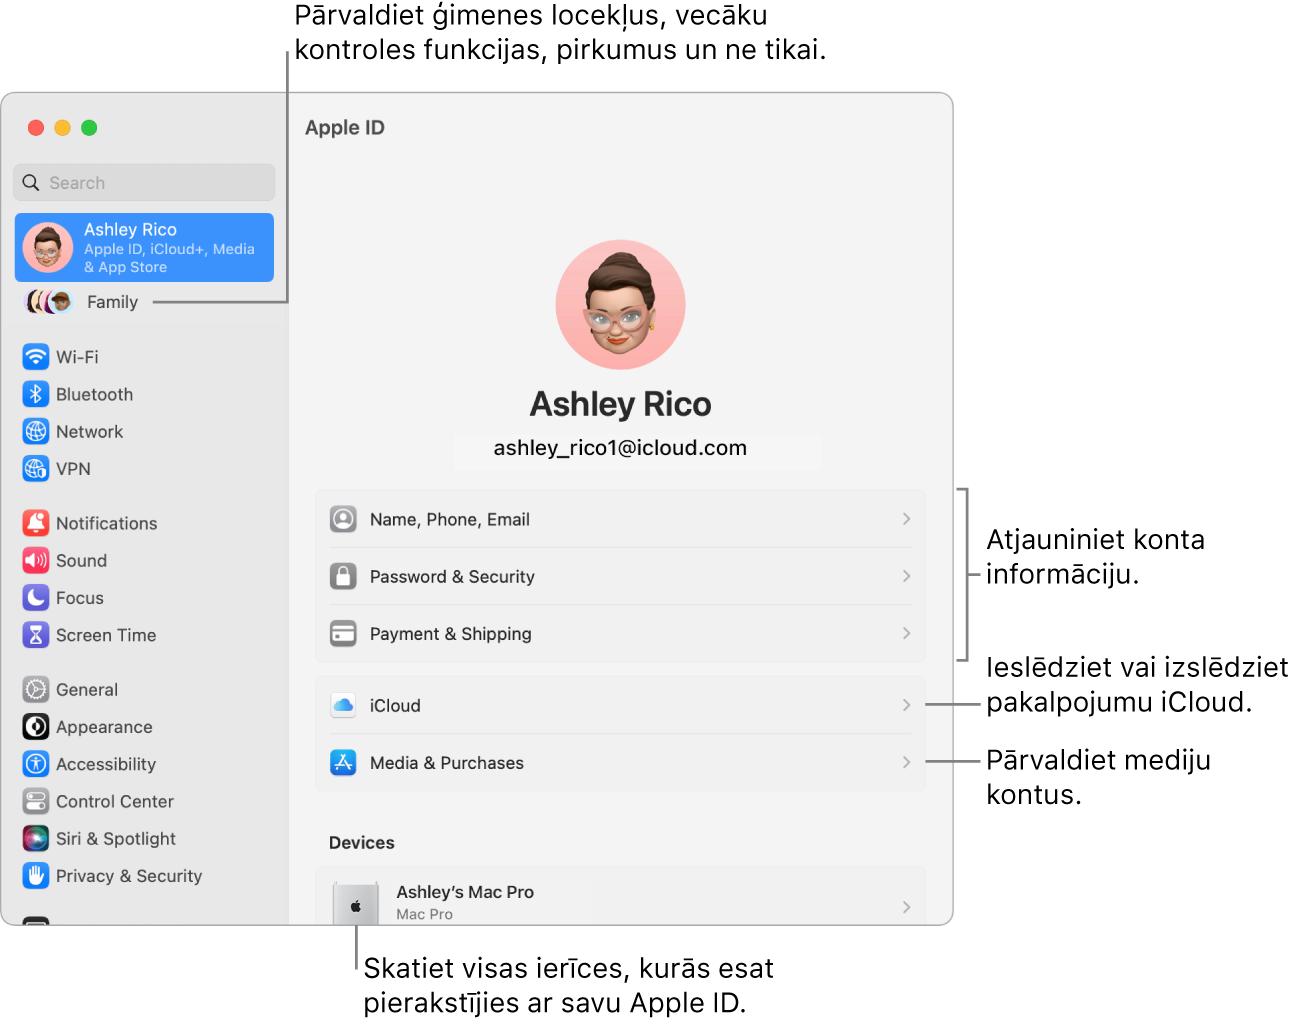 Apple ID rūts izvēlnē System Settings ar remarkām atjaunināt konta informāciju, ieslēgt vai izslēgt iCloud funkcijas, pārvaldīt sociālo tīklu kontus un sadaļu Family, kur varat pārvaldīt ģimenes locekļus, vecāku kontroles funkcijas, pirkumus un ne tikai.